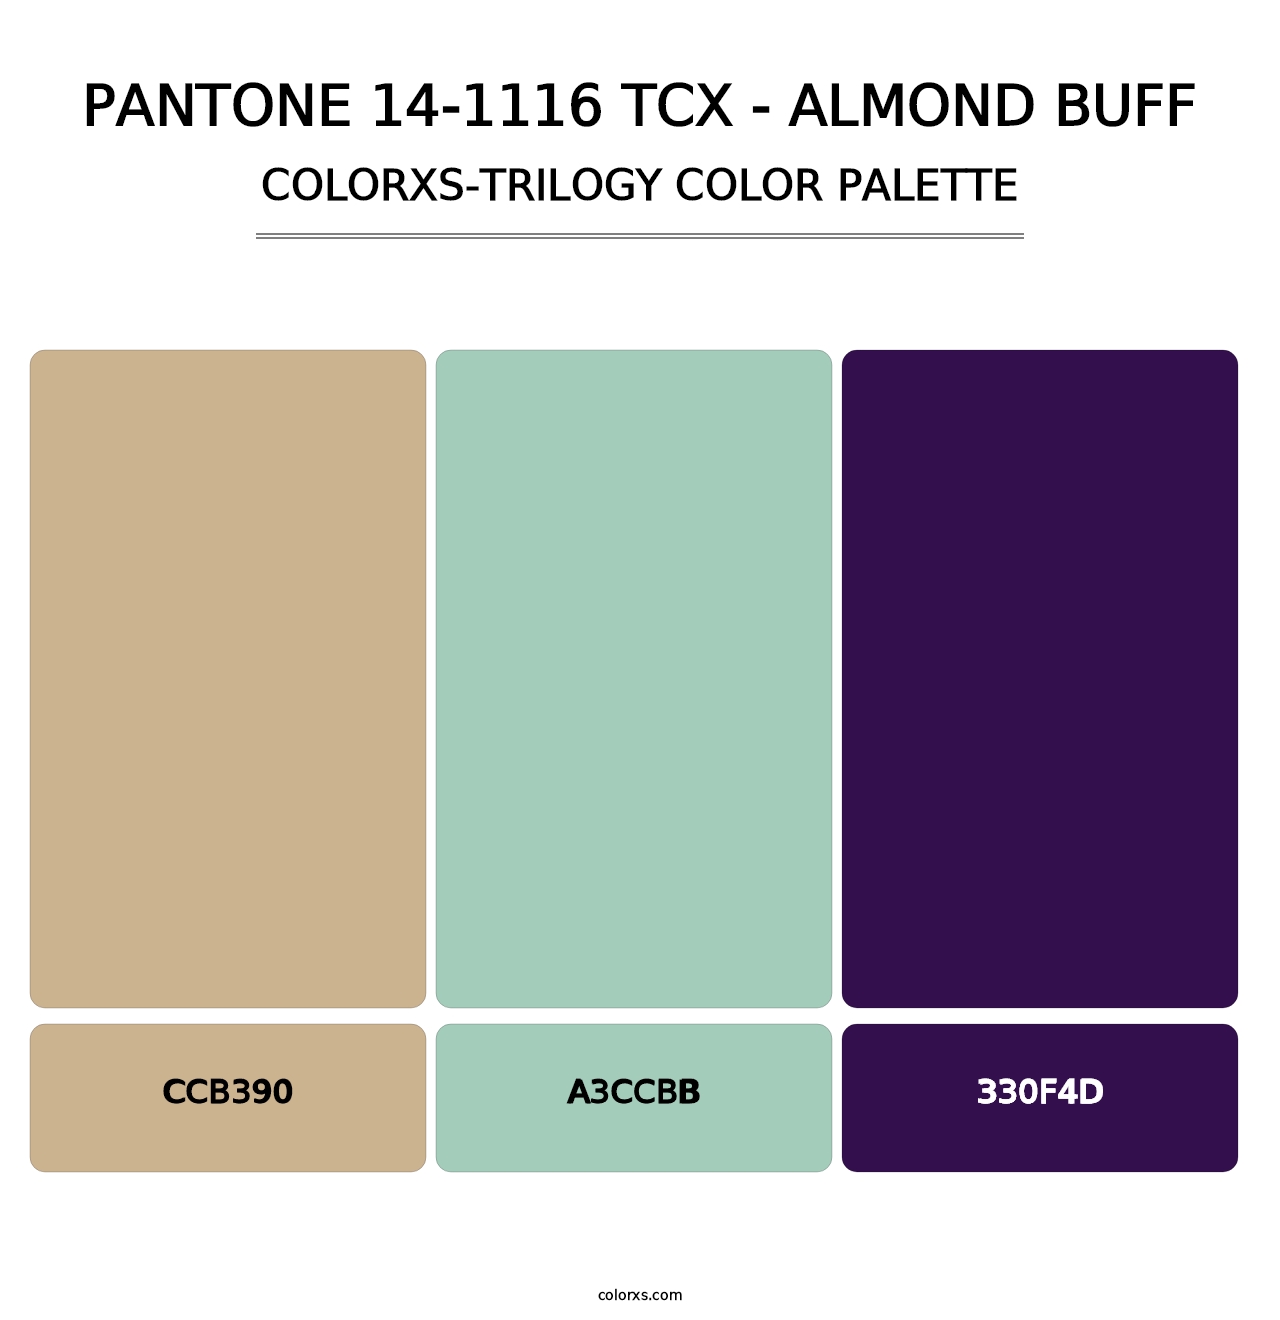 PANTONE 14-1116 TCX - Almond Buff - Colorxs Trilogy Palette